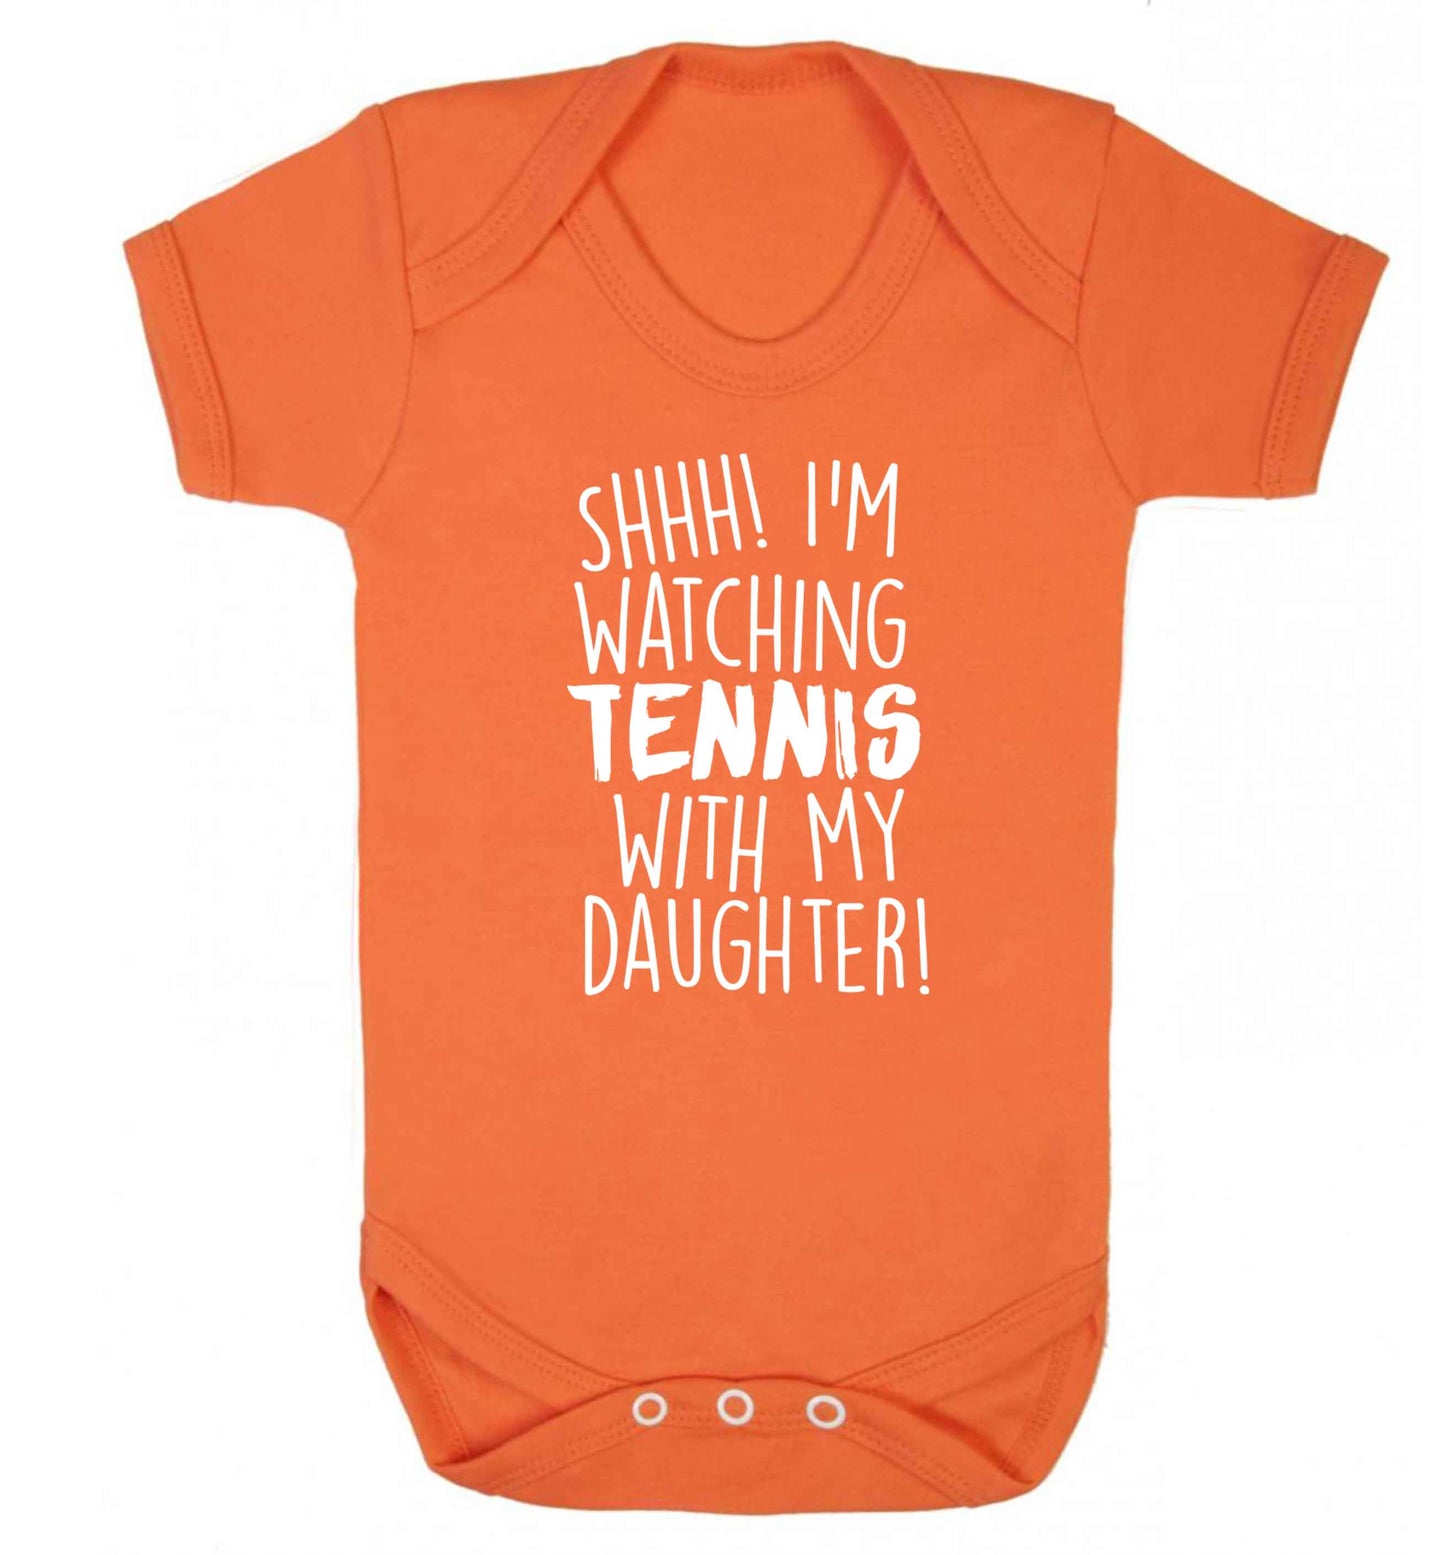 Shh! I'm watching tennis with my daughter! Baby Vest orange 18-24 months